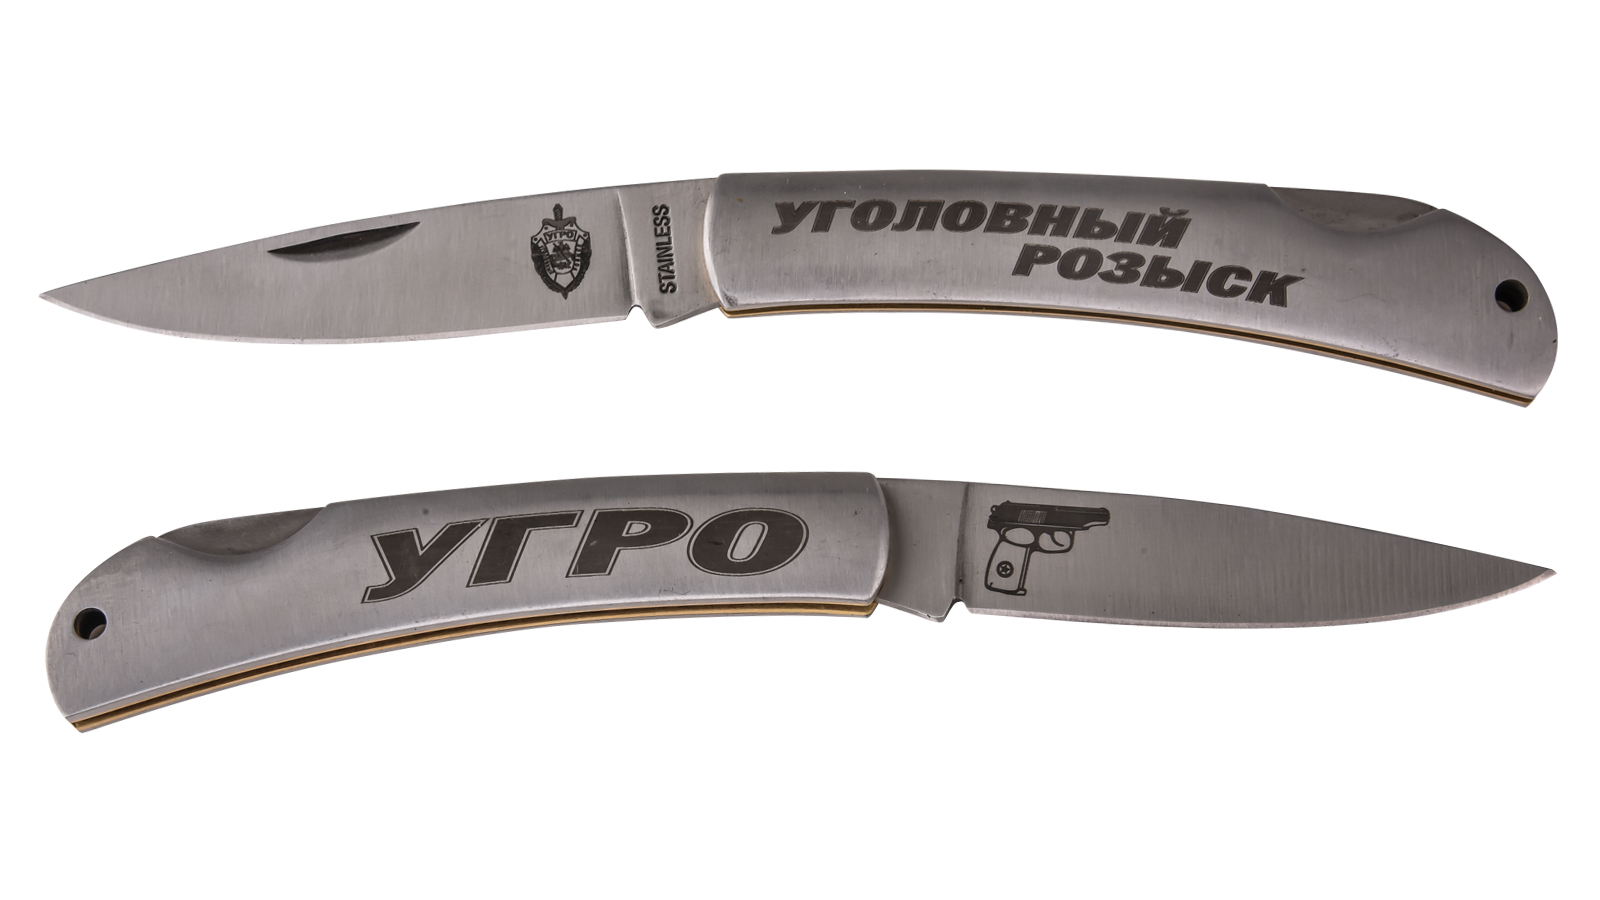 Купить удобный складной нож с символикой Уголовного розыска в Военпро